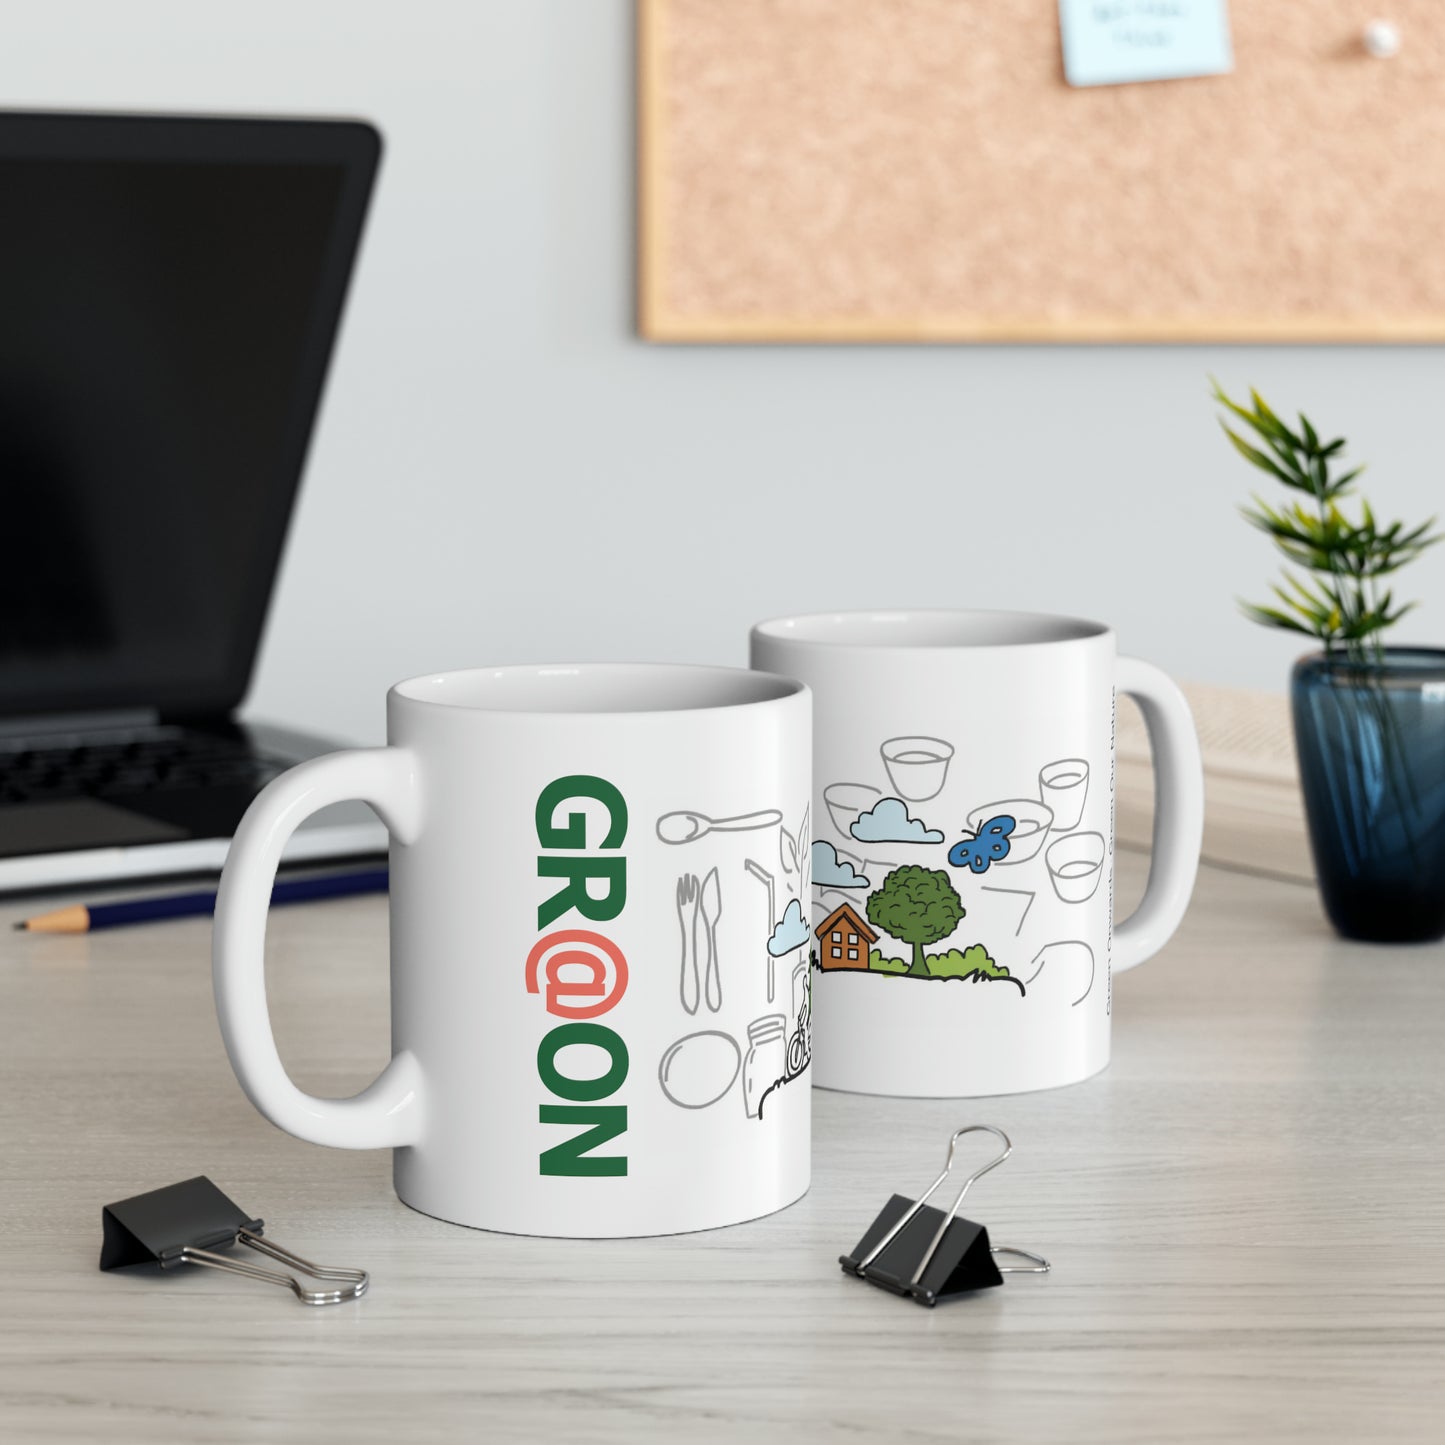 Eco-Friendly - Ceramic Mug 11oz - Living of Green